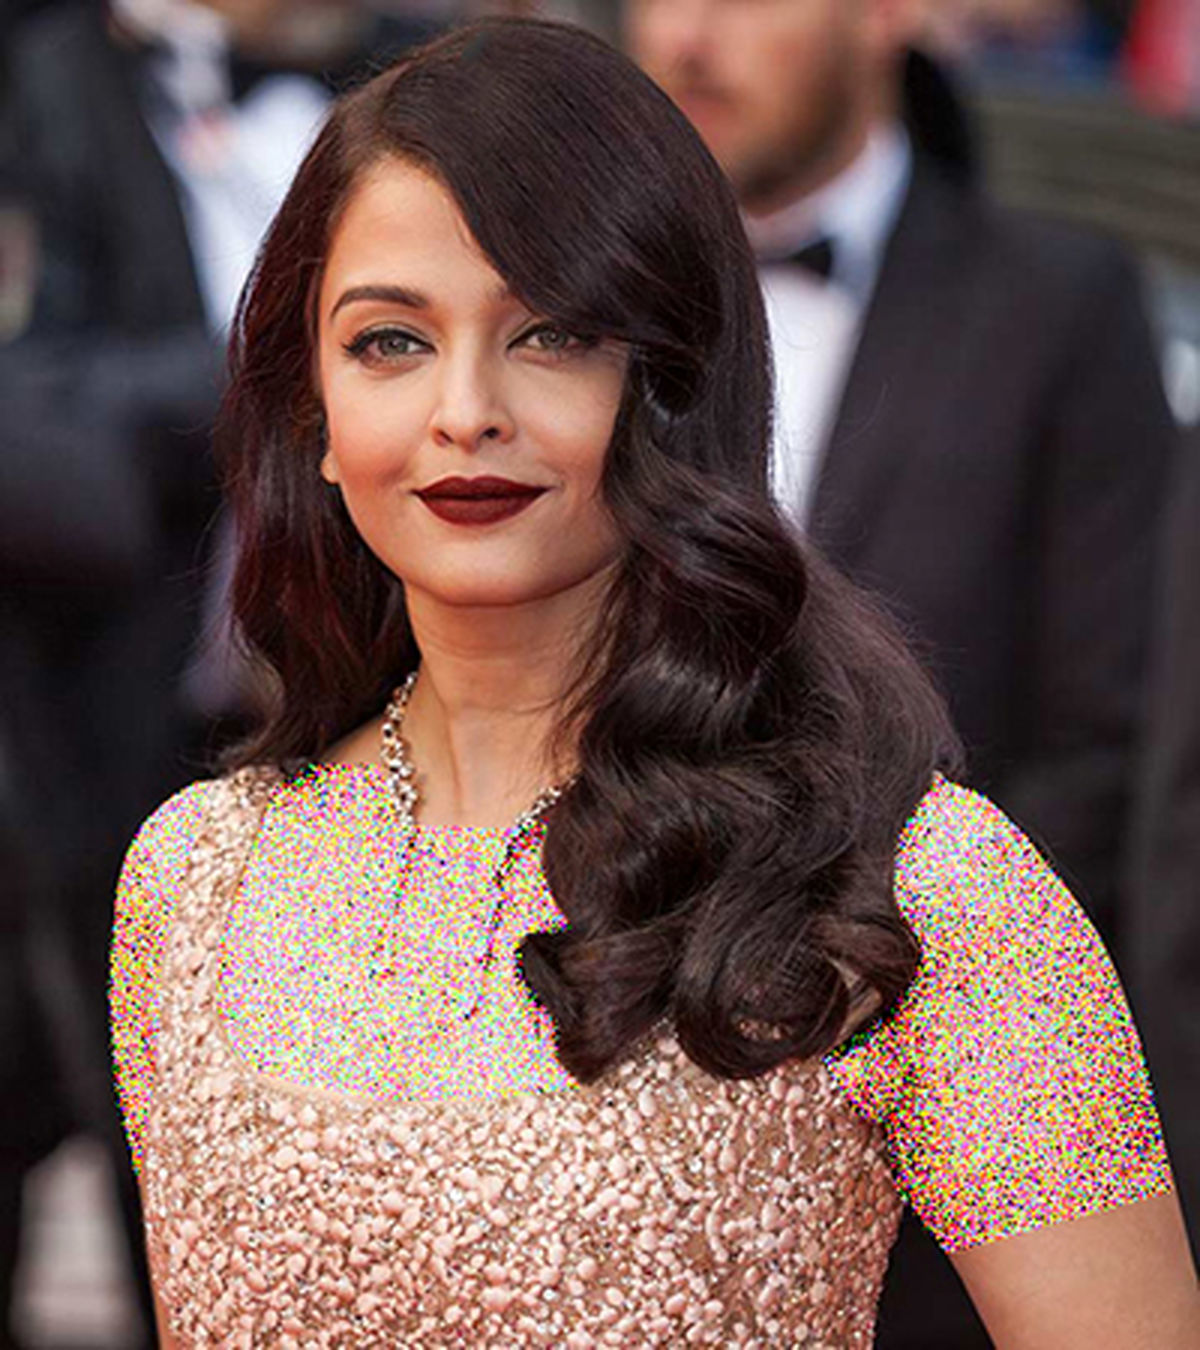 مدل موی باز به سبک آیشواریا رای، زیباترین هنرپیشه بالیوود